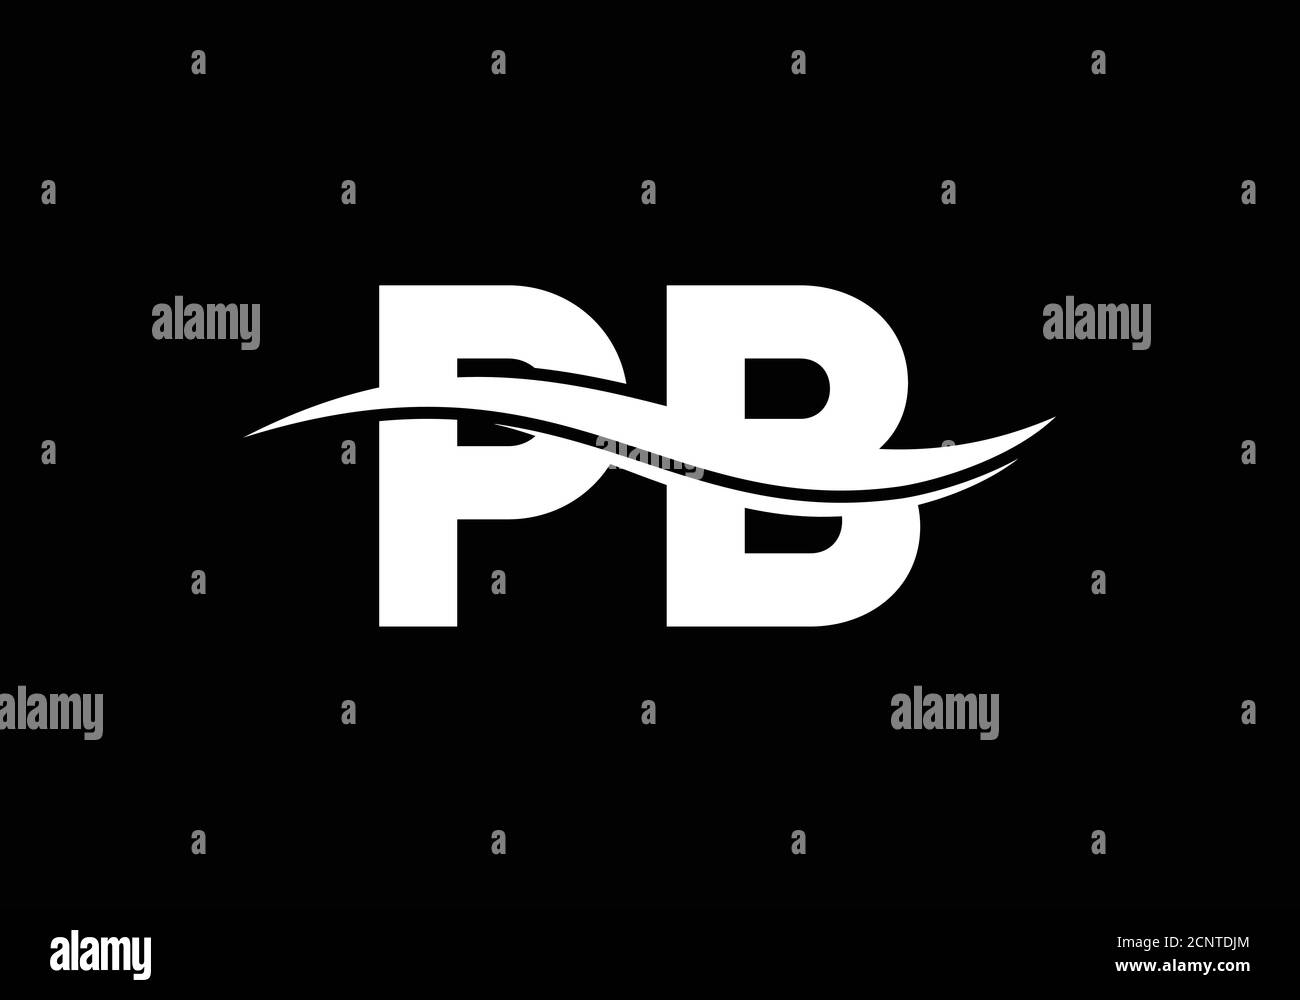 P B Initial Letter Logo design, Graphic Alphabet Symbol for Corporate